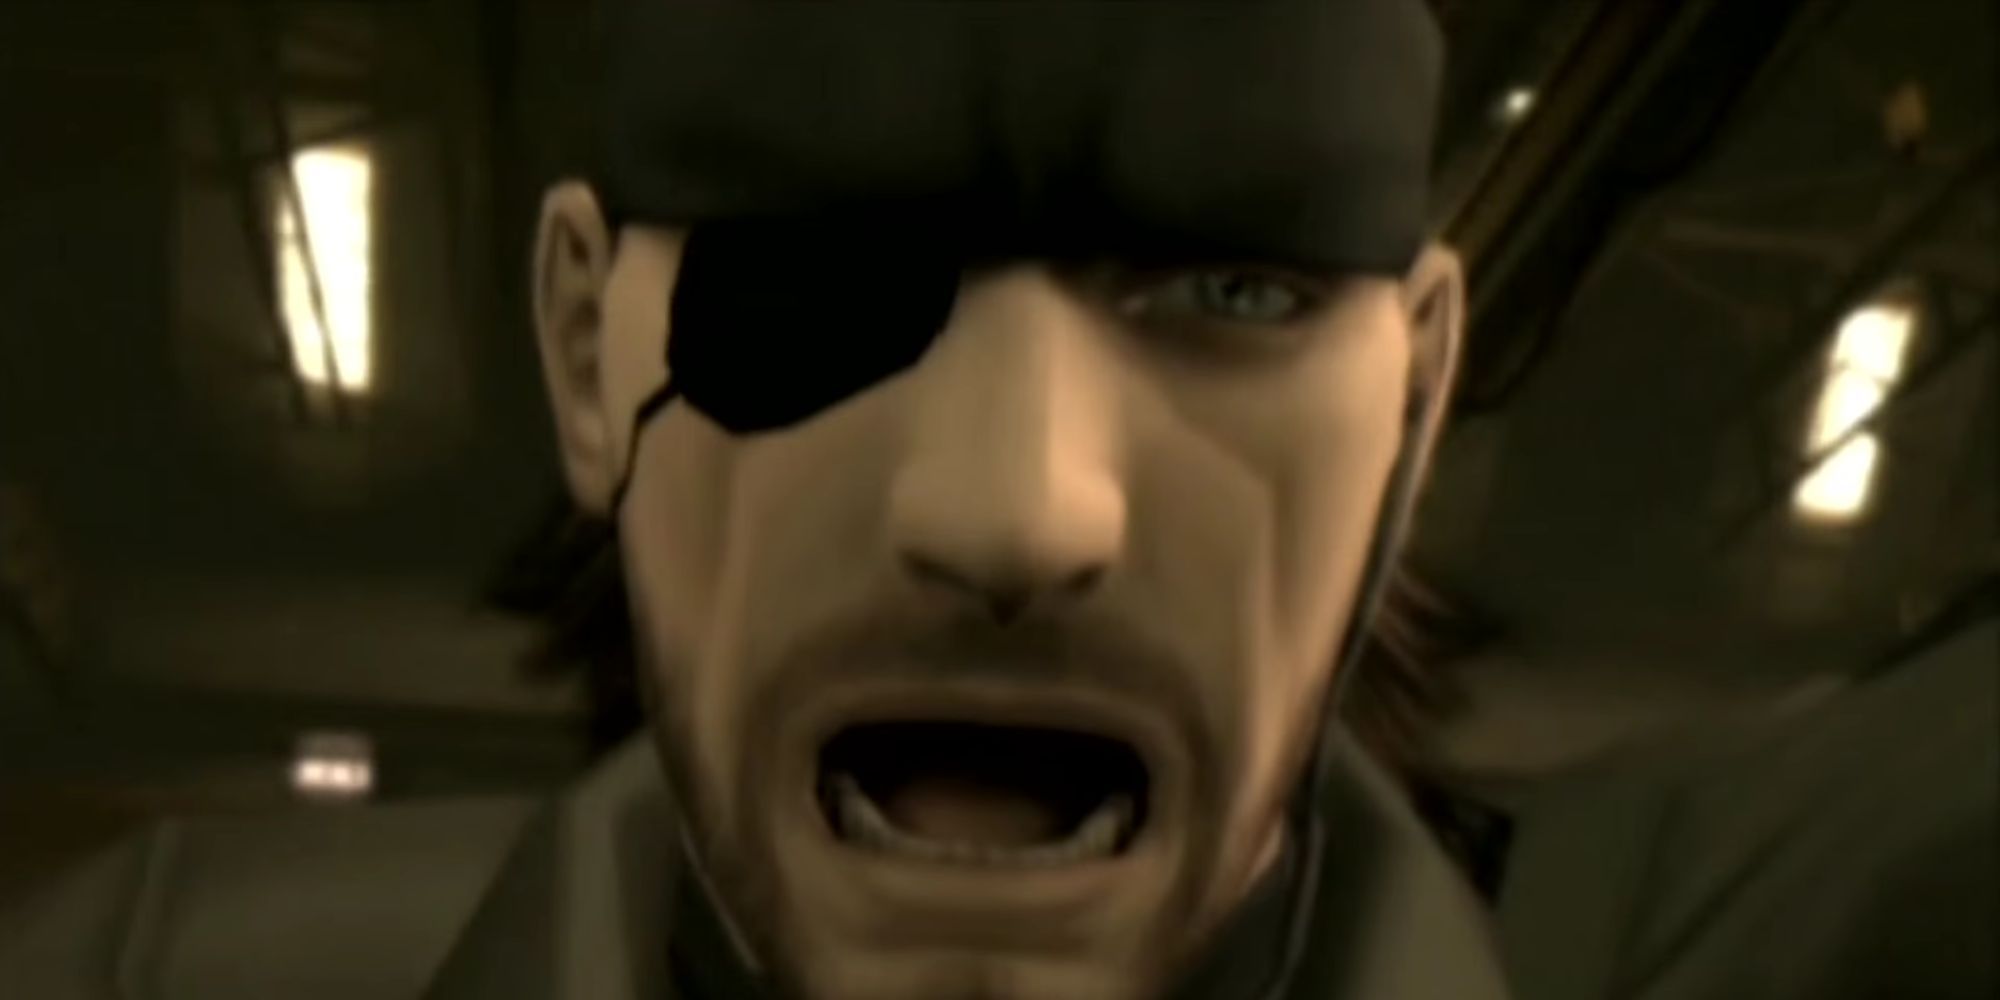 Snake looking shocked in Metal Gear Solid 3.